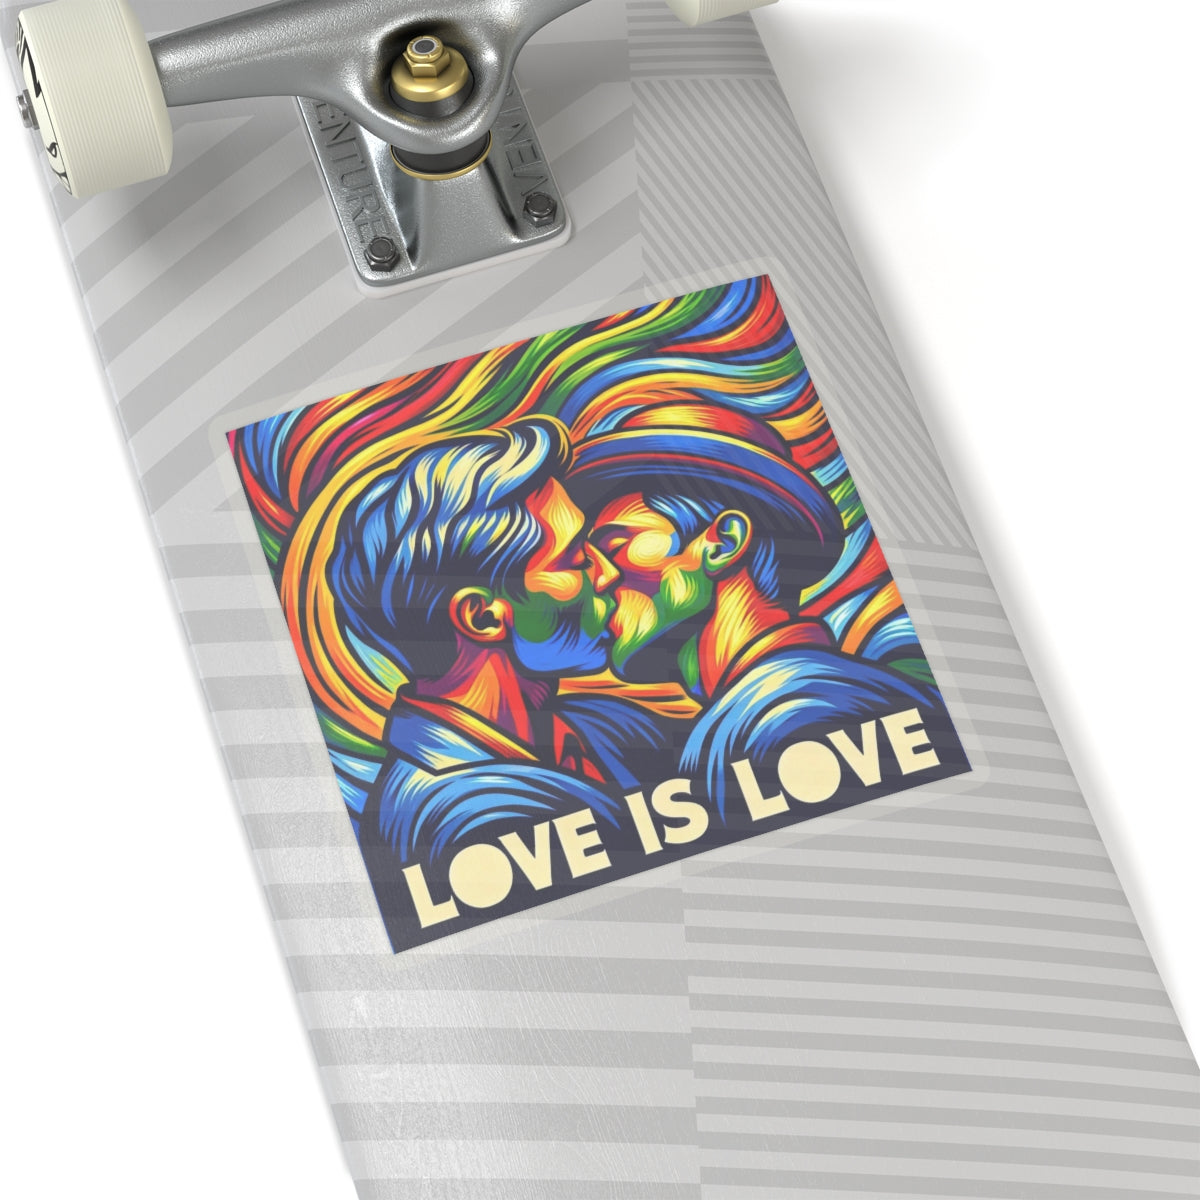 Bold Statement Sticker: Love is Love!